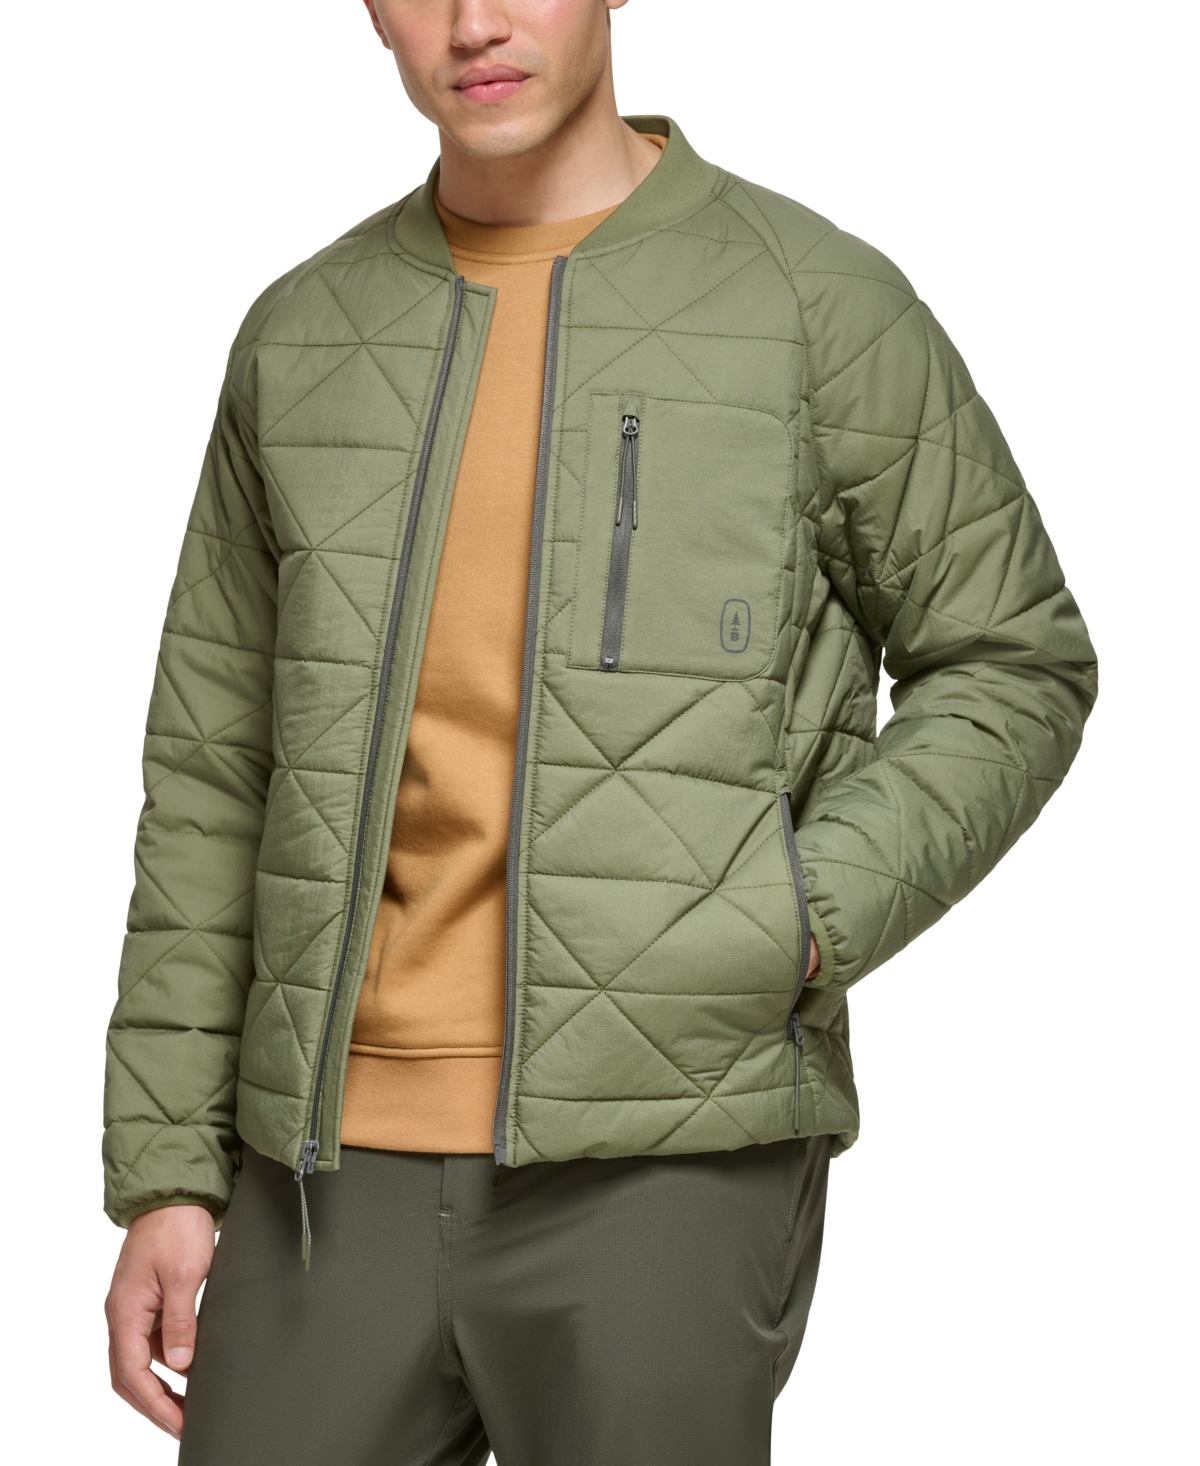 Bass Outdoor Men's Packable Liner Jacket